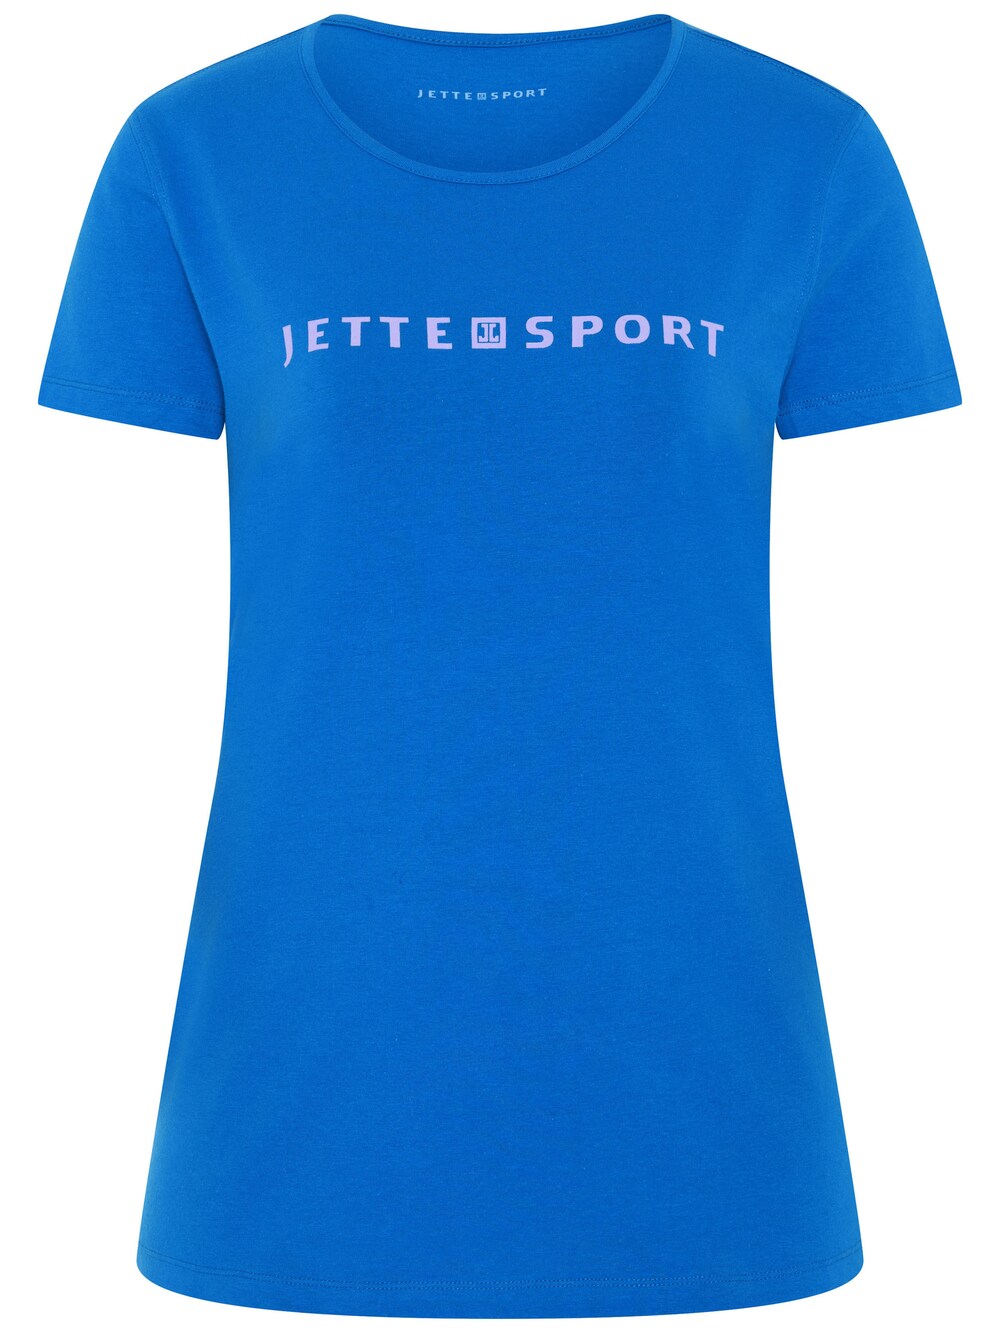 Рубашка Jette, голубое небо